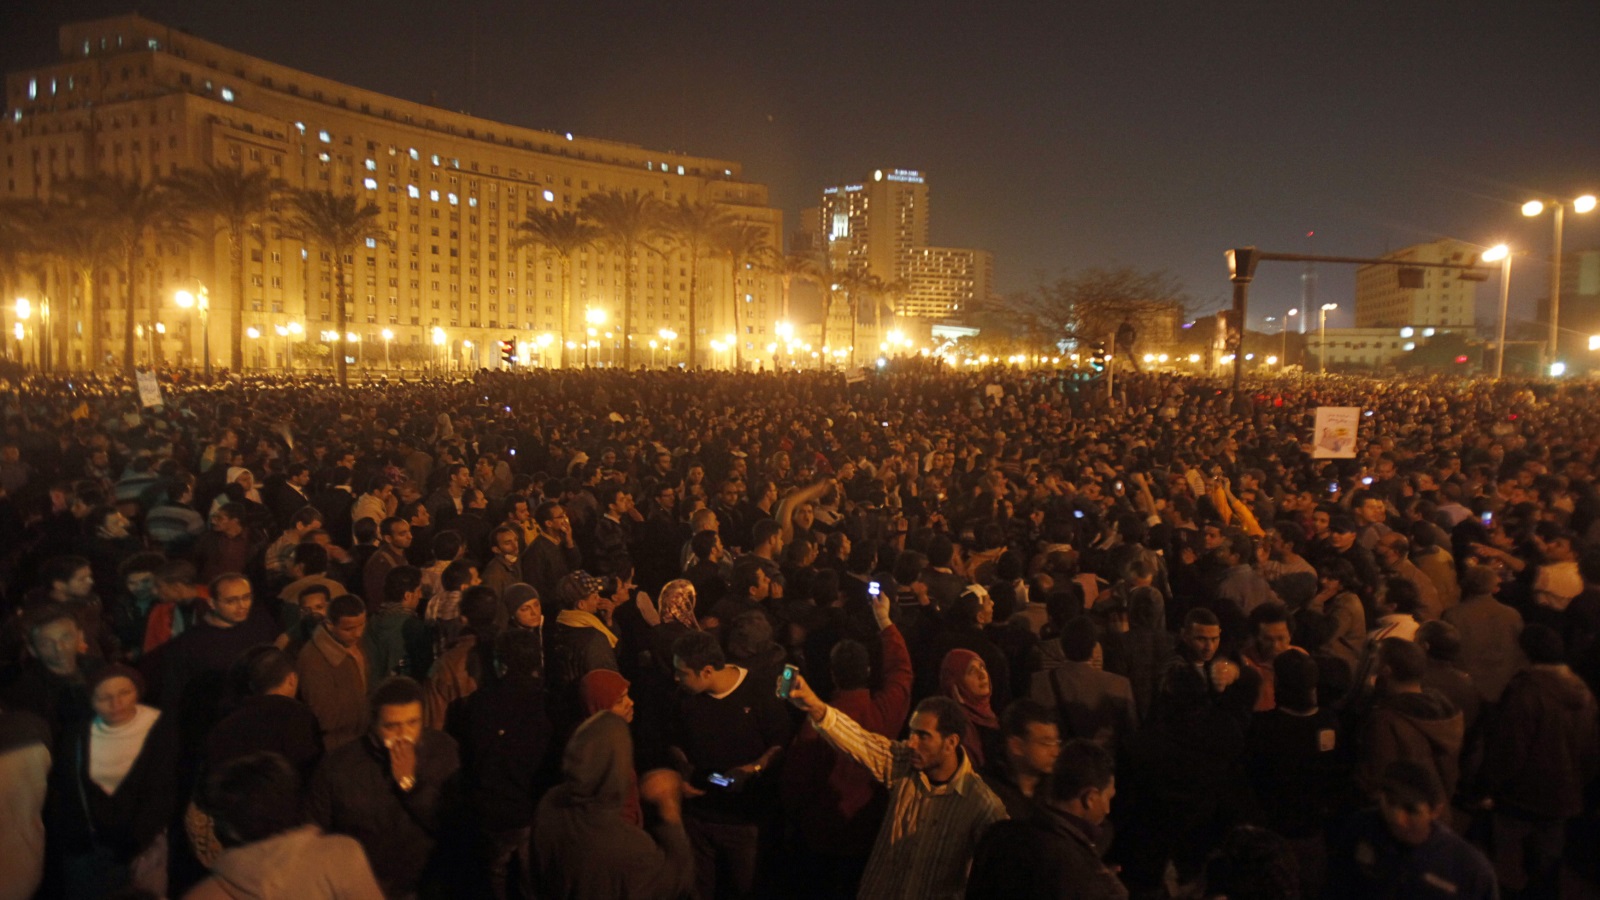 2 مساء يوم 25 يناير احتشد الآلاف في ميدان التحرير وسط تجاهل من وسائل الإعلام المصرية رويترز